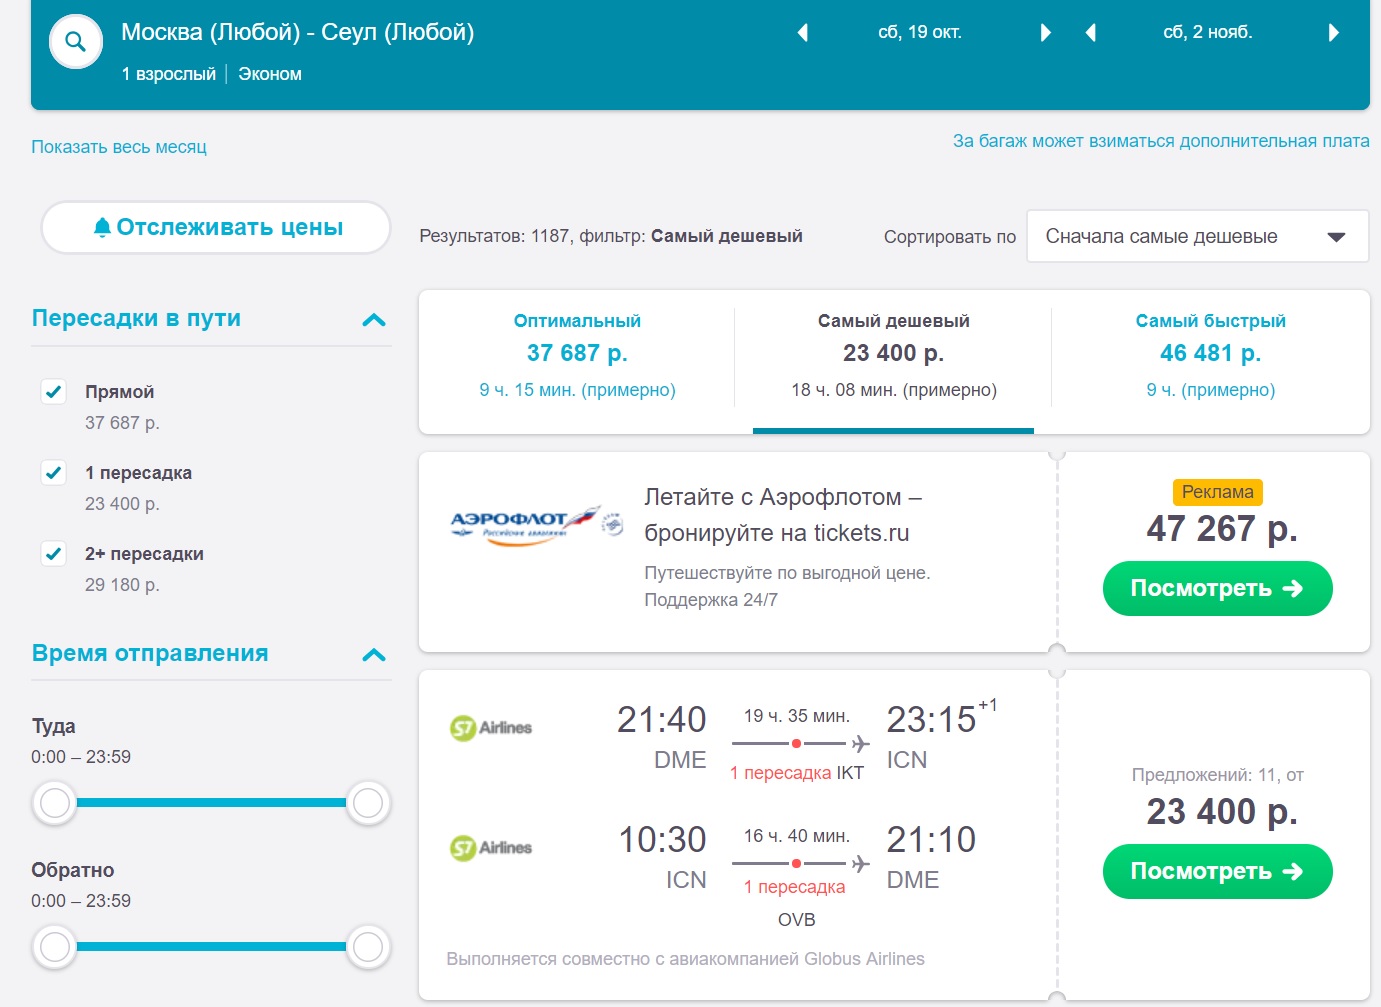 Купить авиабилеты в москве в корею узнать рейсы самолета по номеру билета